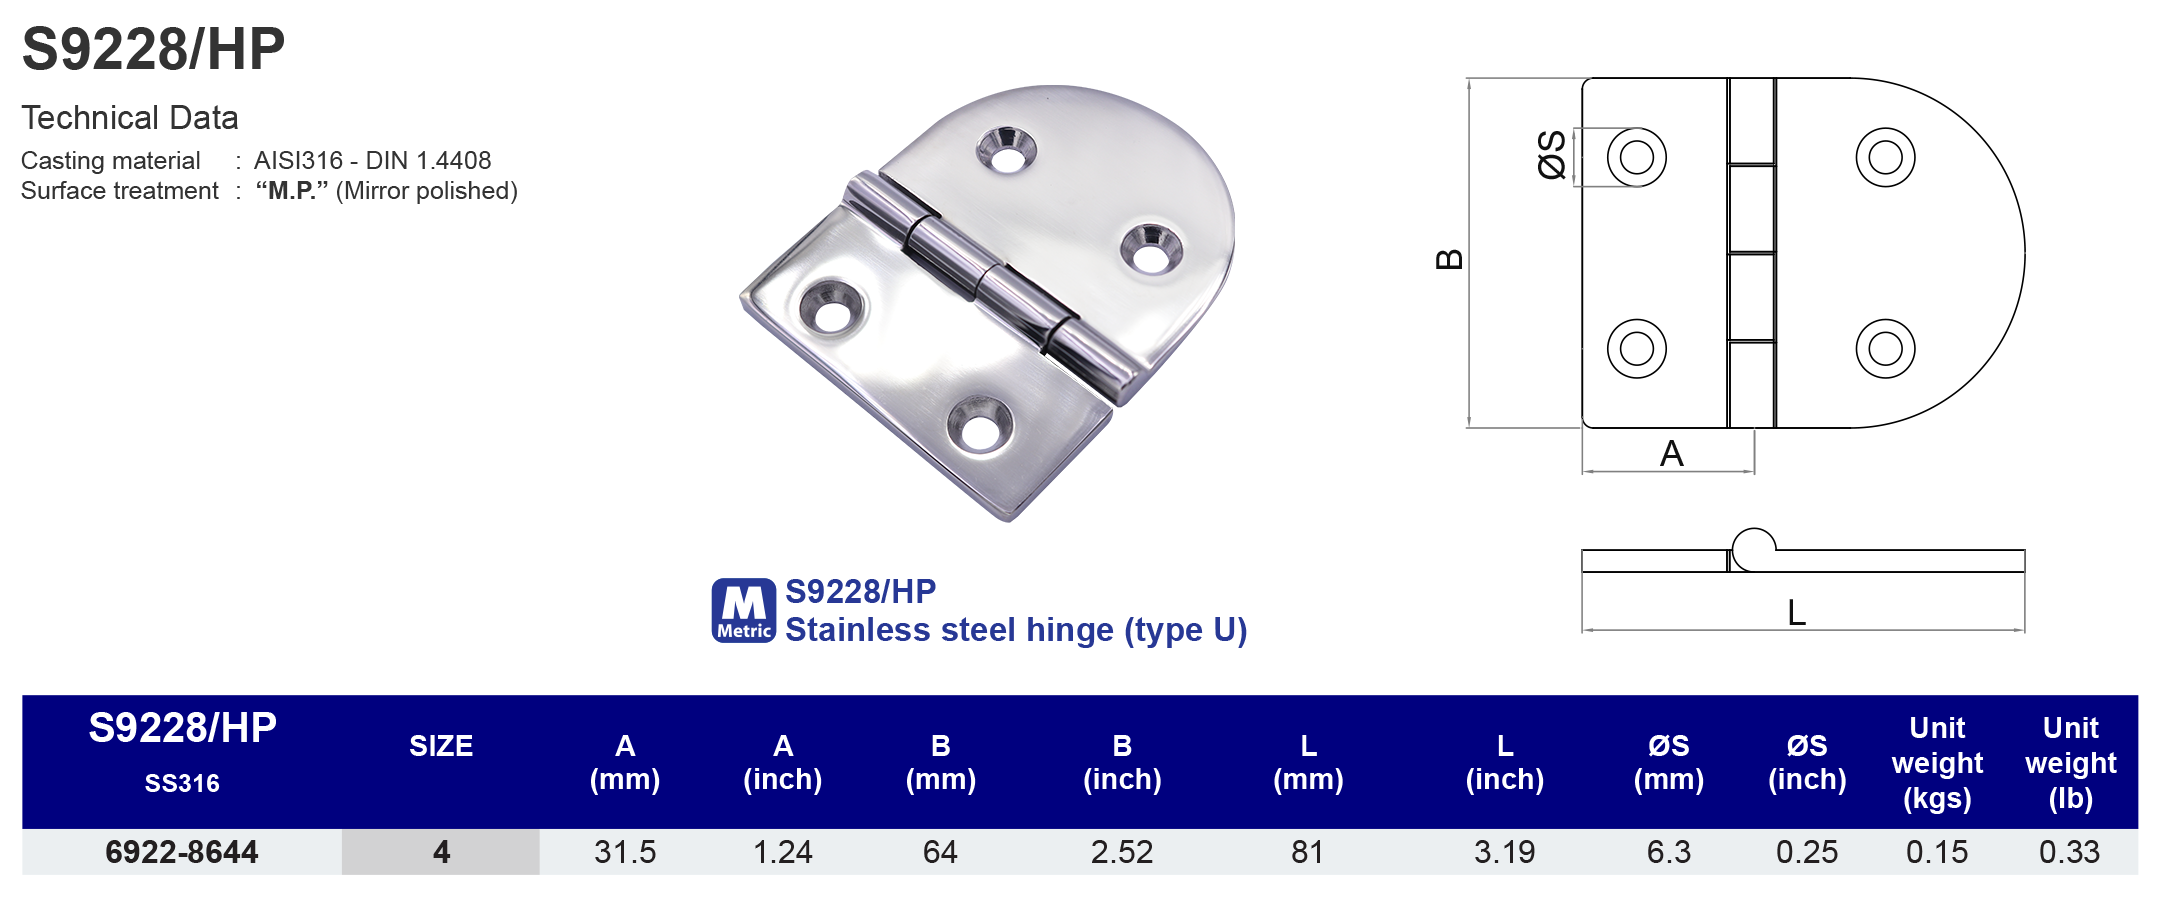 S9228/HP Stainless steel hinge (type U) - 316